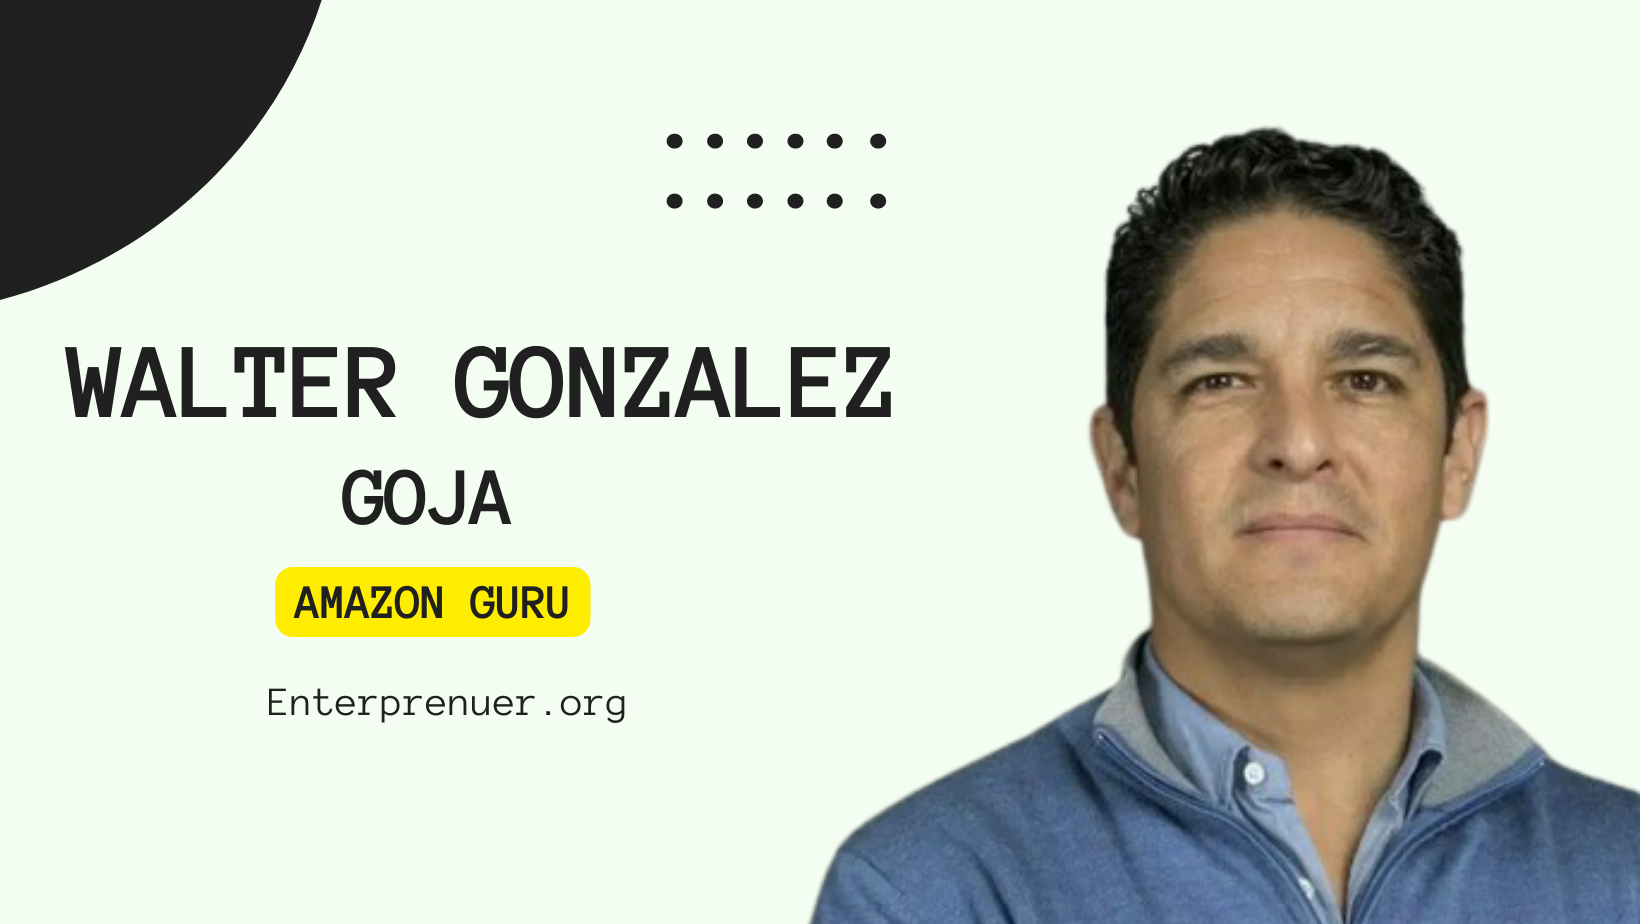 Meet Amazon Guru Walter Gonzalez, Founder of GOJA